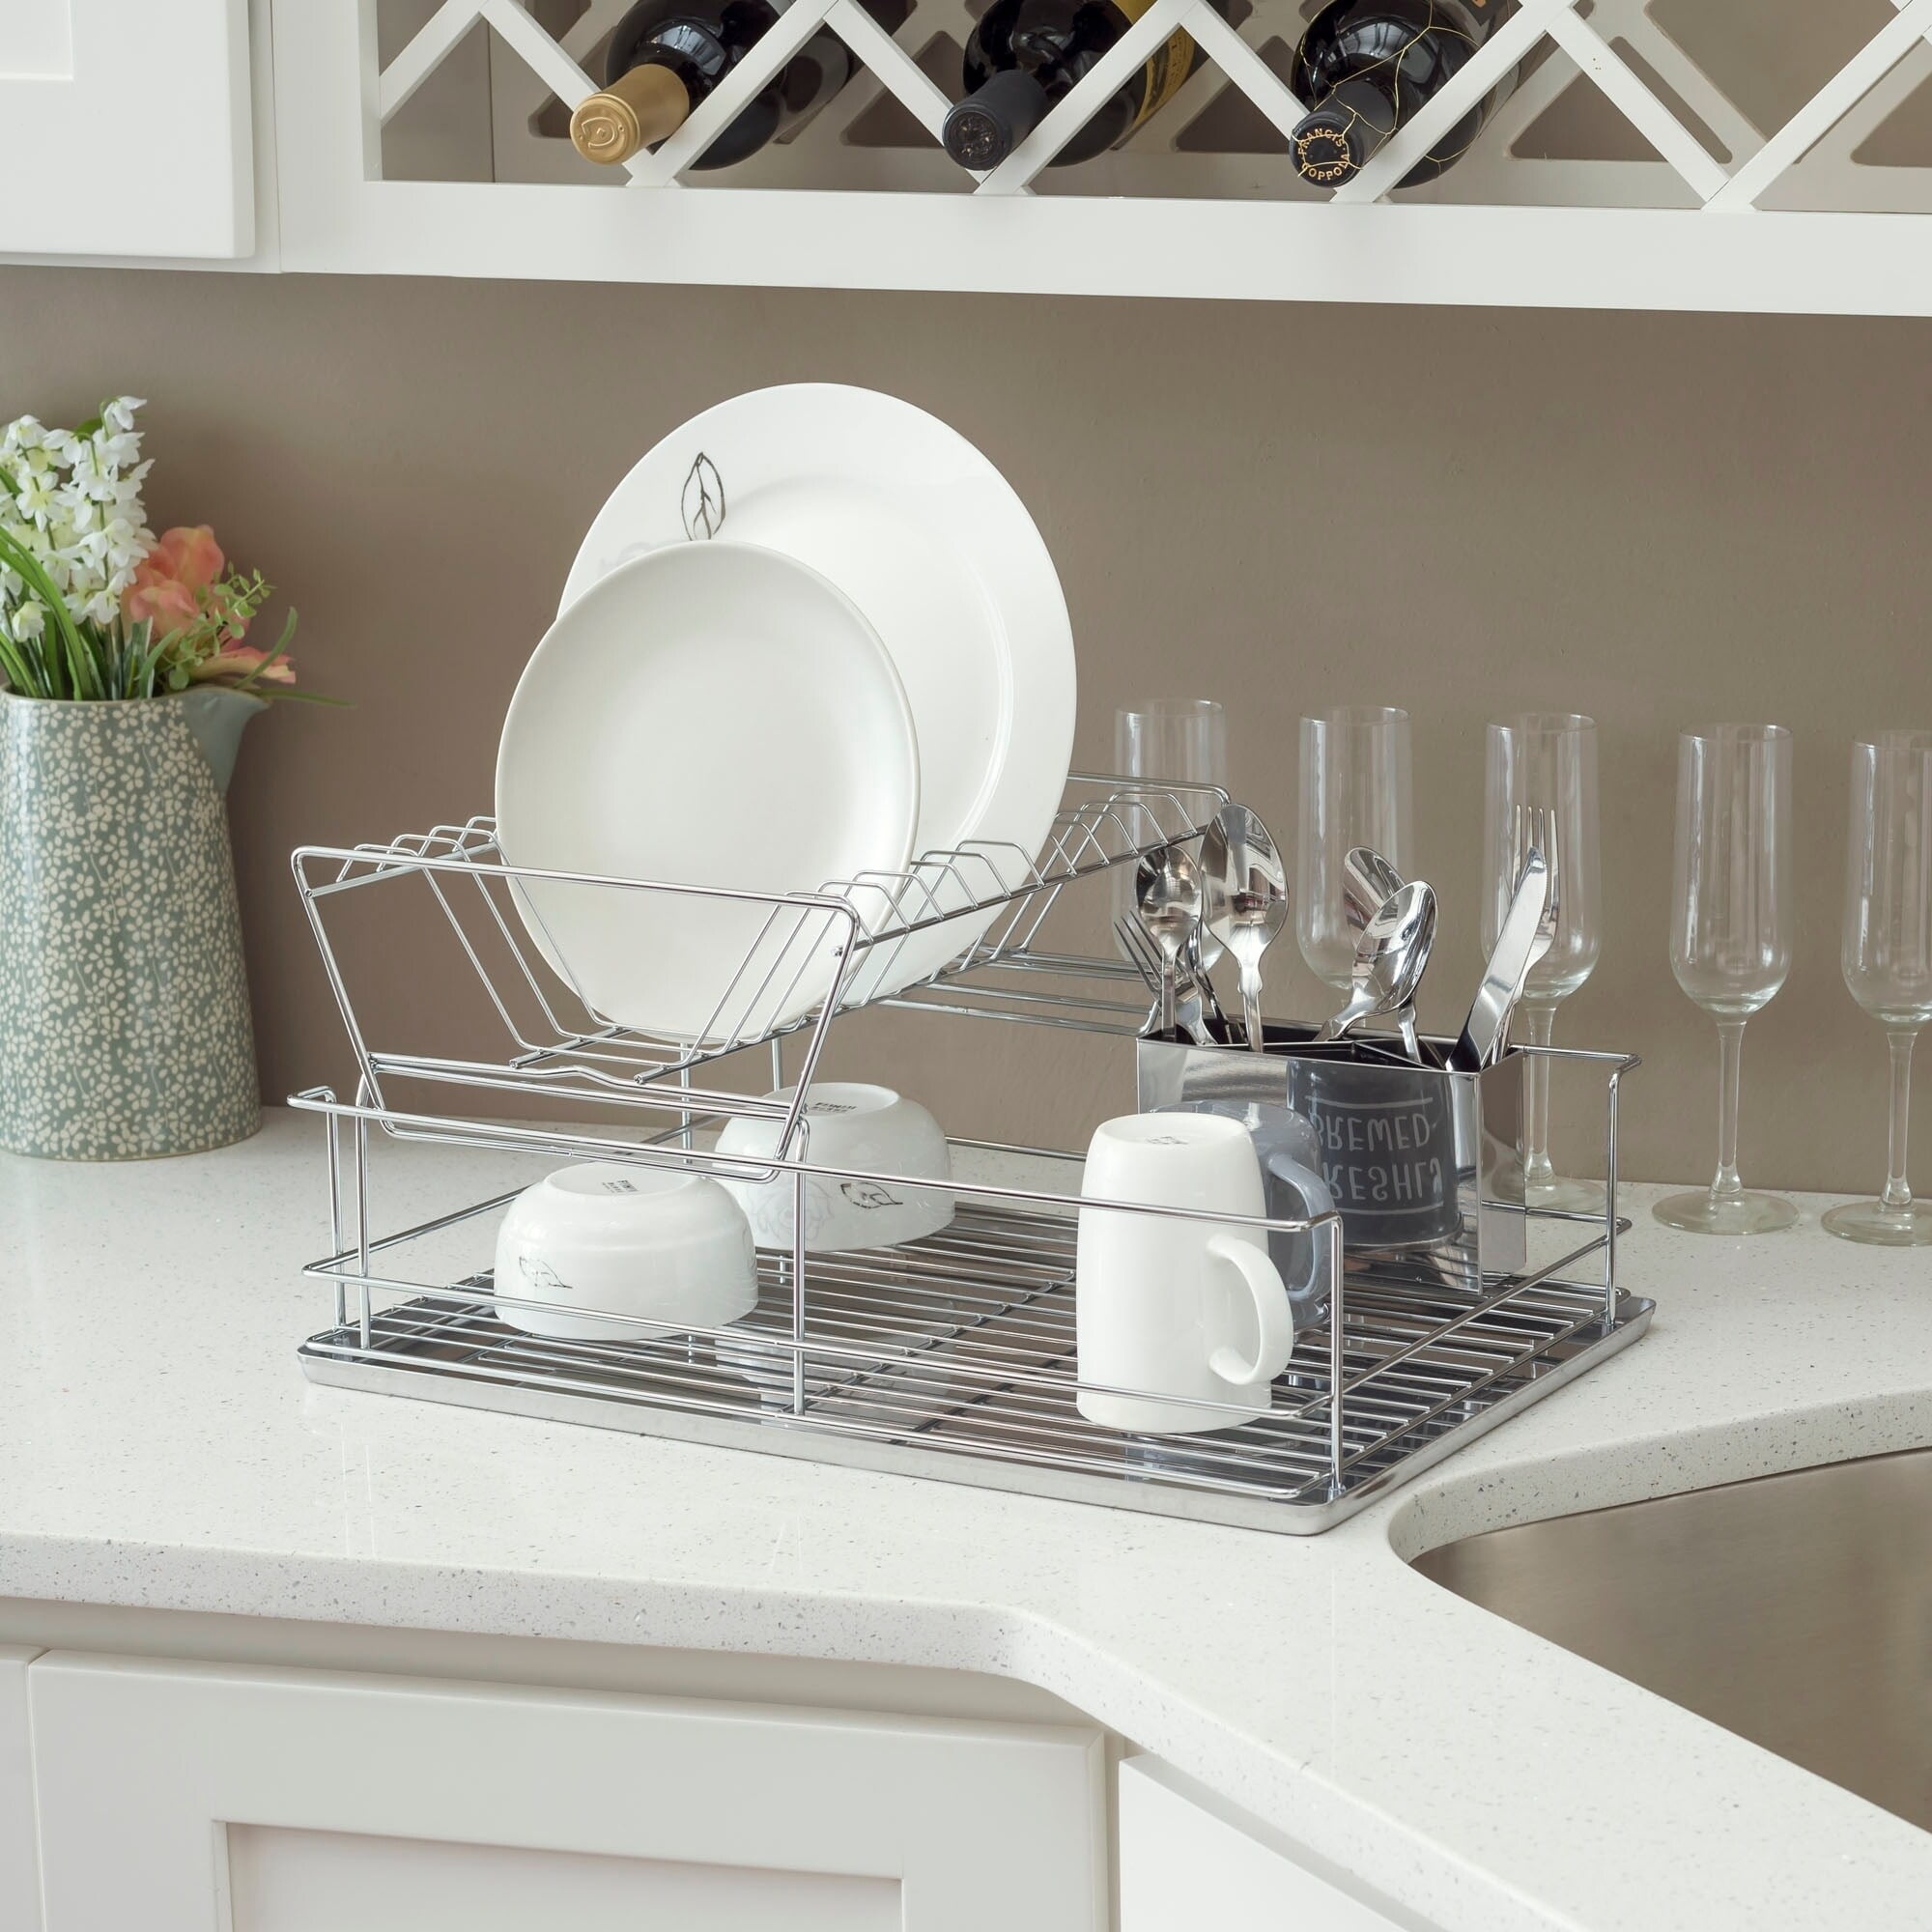 Home Basics 12.75-in W x 20.25-in L x 5-in H Steel Dish Rack and Drip Tray  at